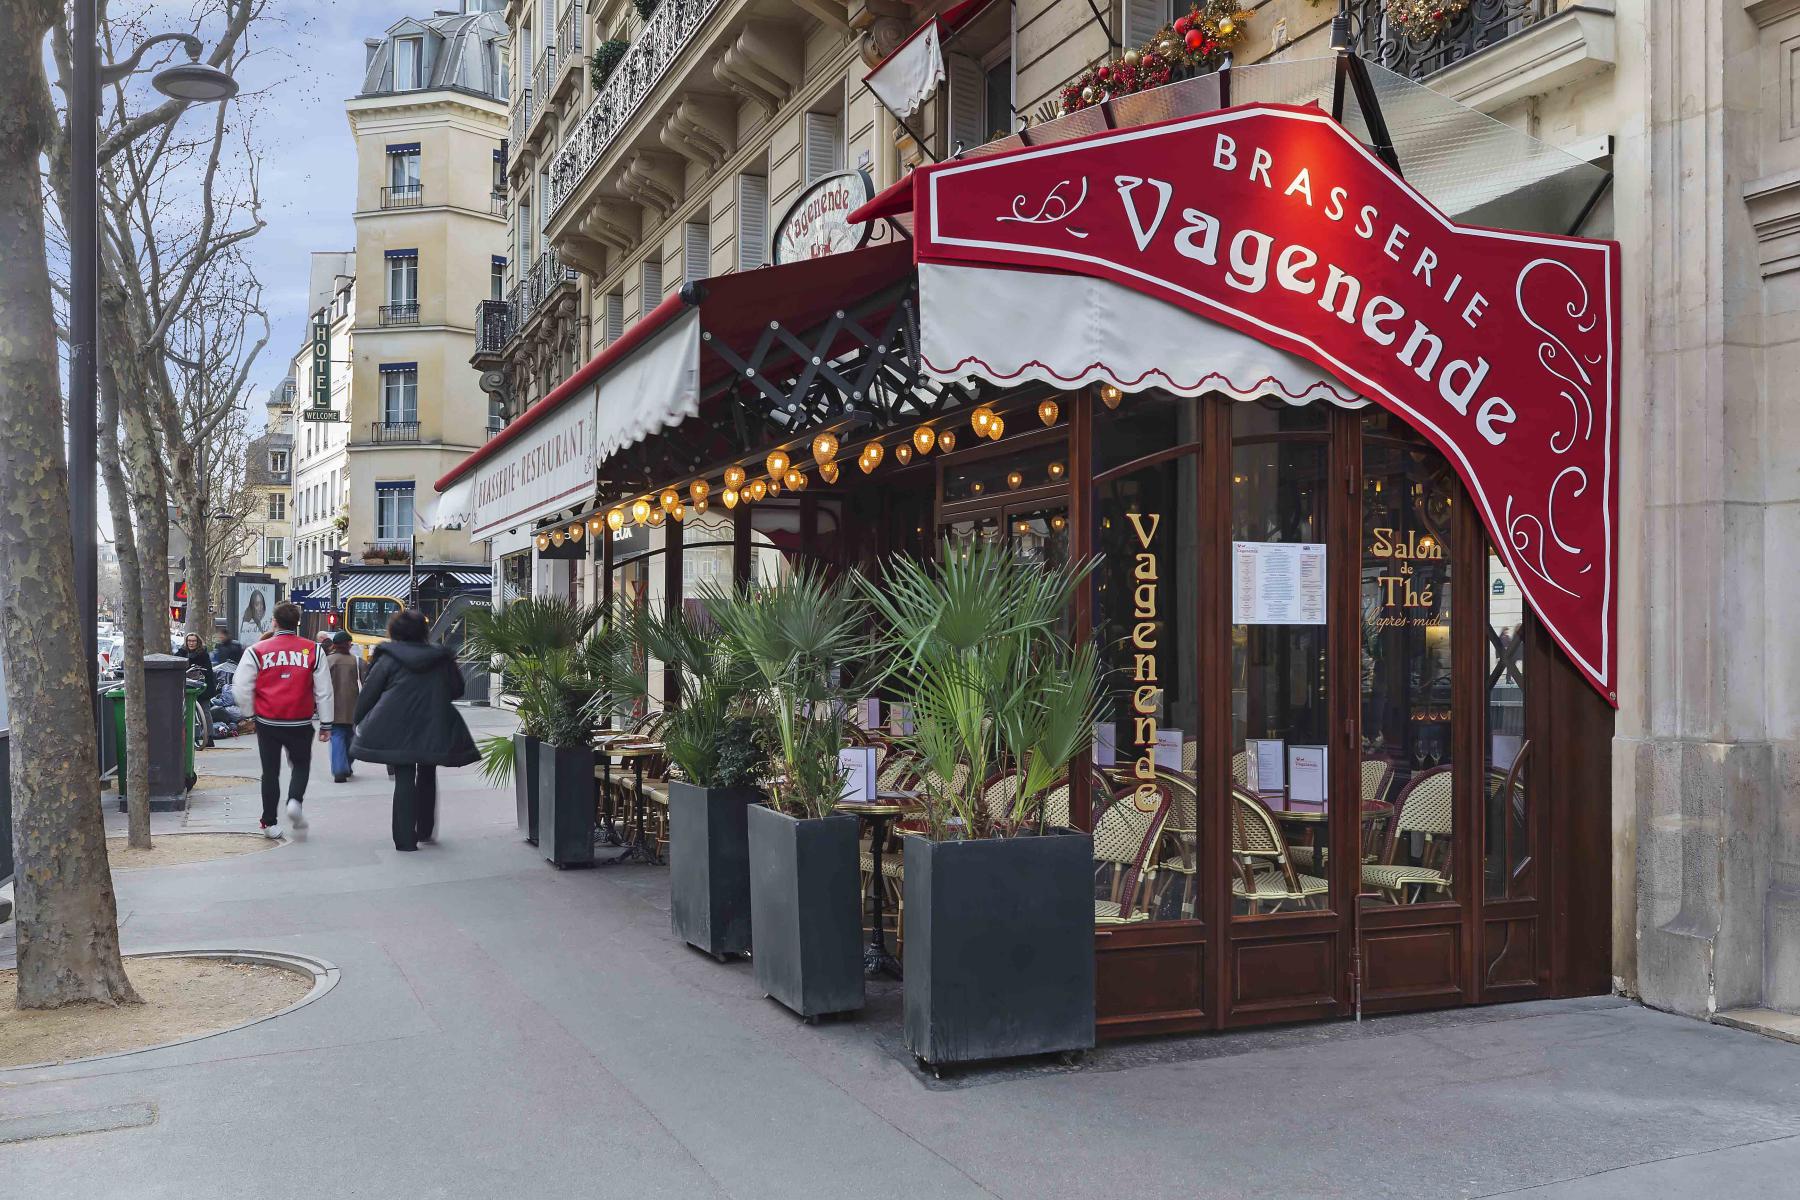 Brasserie-restaurant de style Art Nouveau à Paris